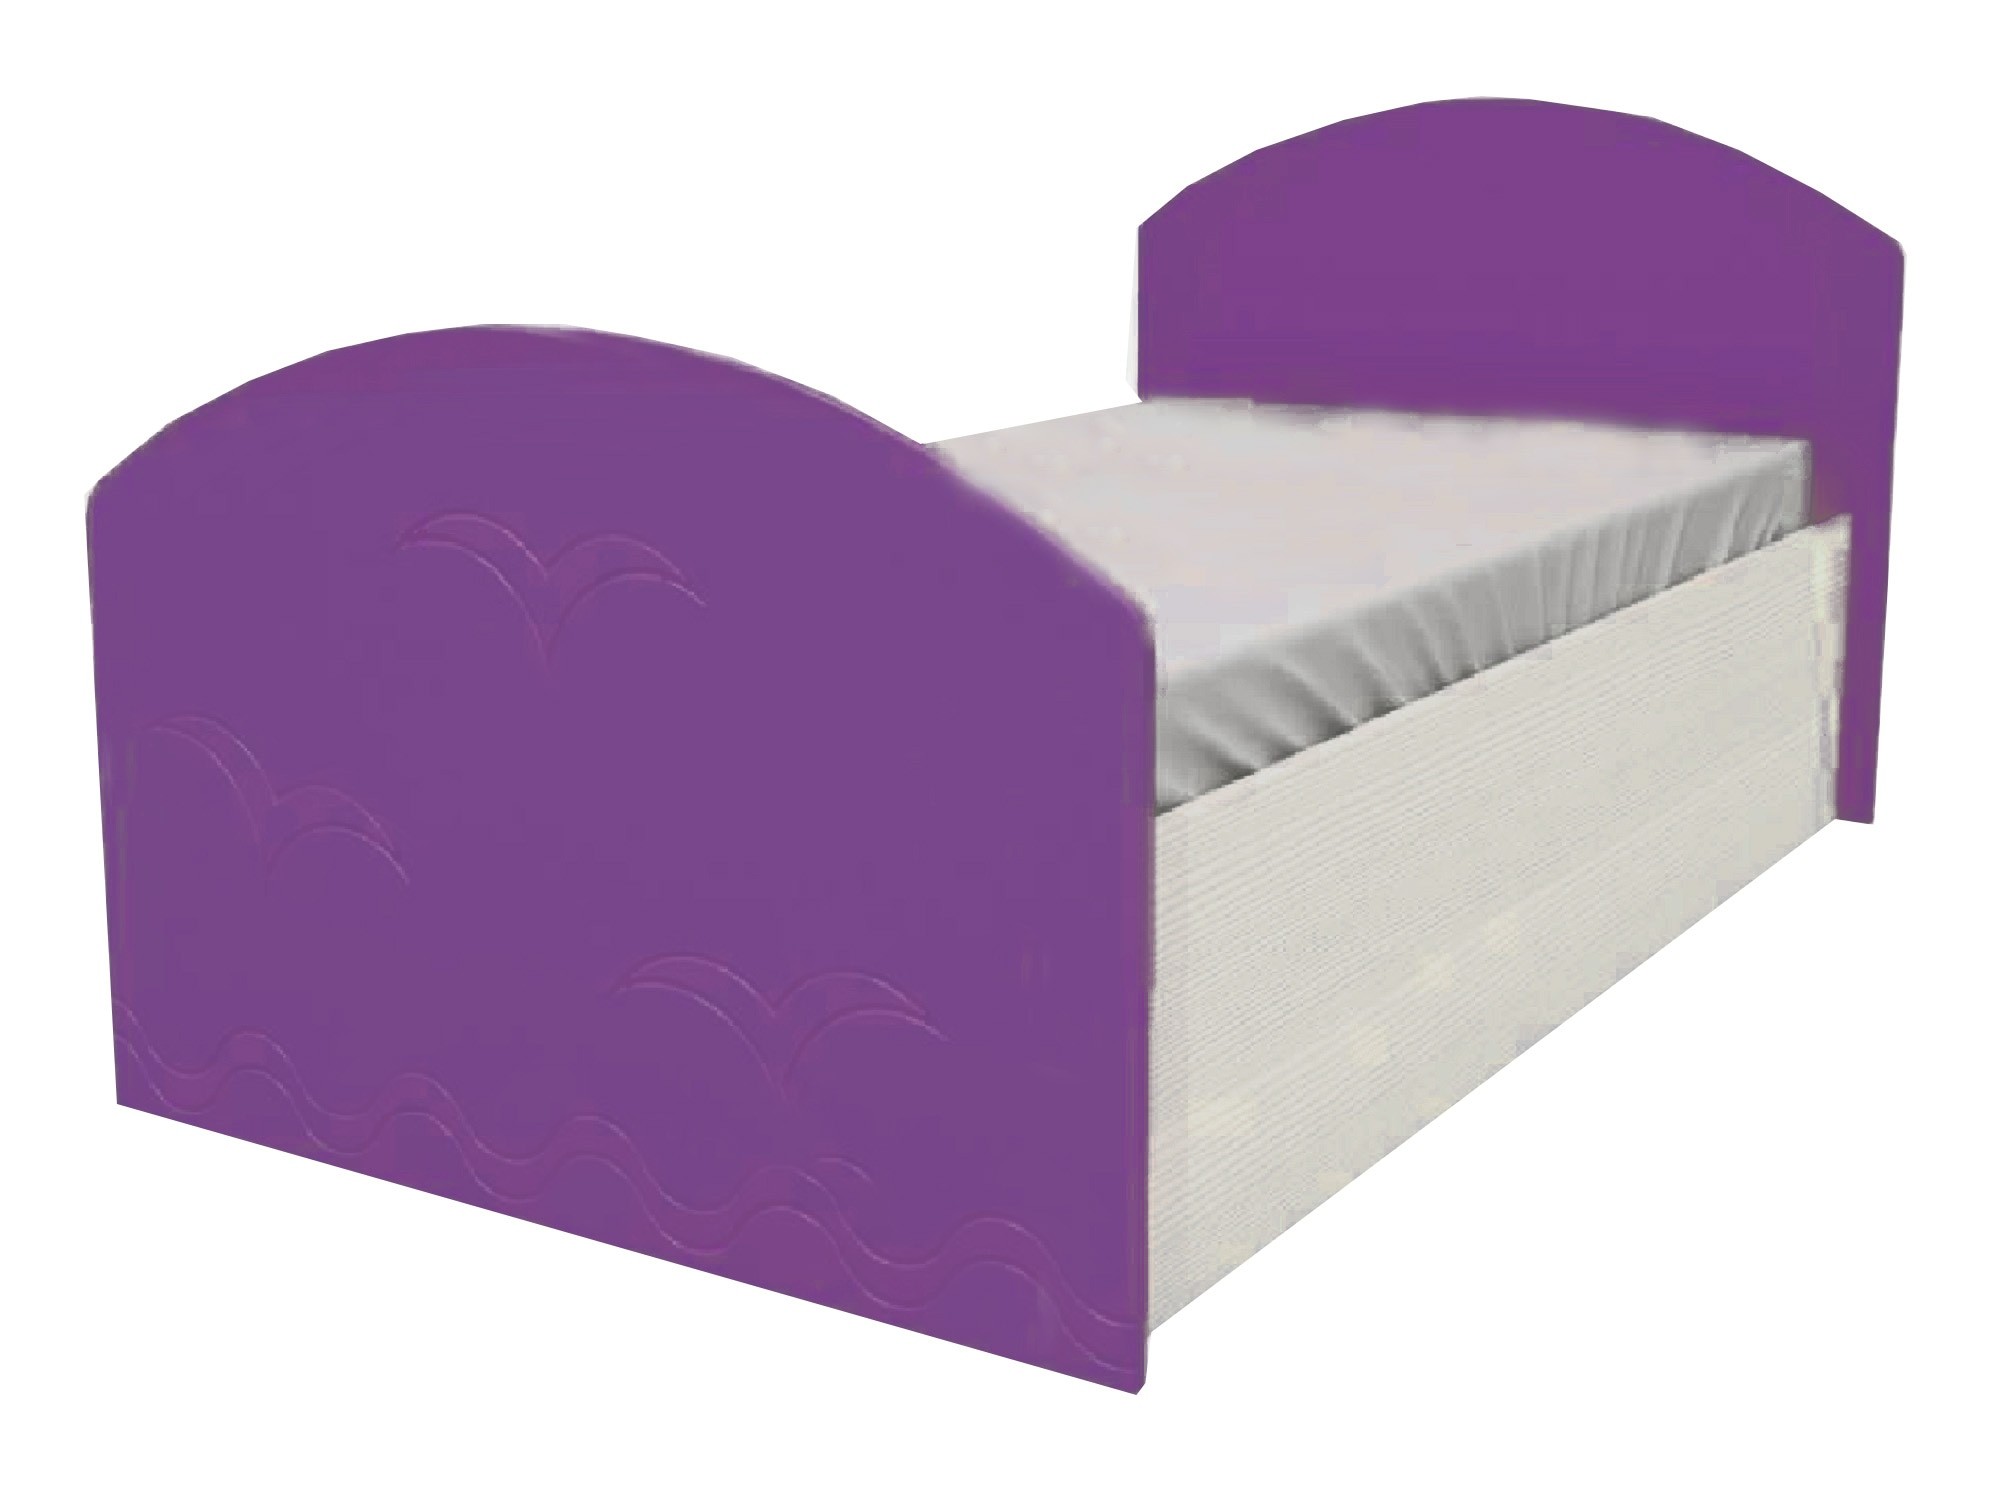 Юниор-2 Детская кровать 80, металлик (Фиолетовый металлик, Дуб белёный) Фиолетовый металлик, МДФ, ЛДСП юниор 1 двухъярусная кровать 80 бирюза металлик дуб белёный бирюза металлик зеленый лдсп